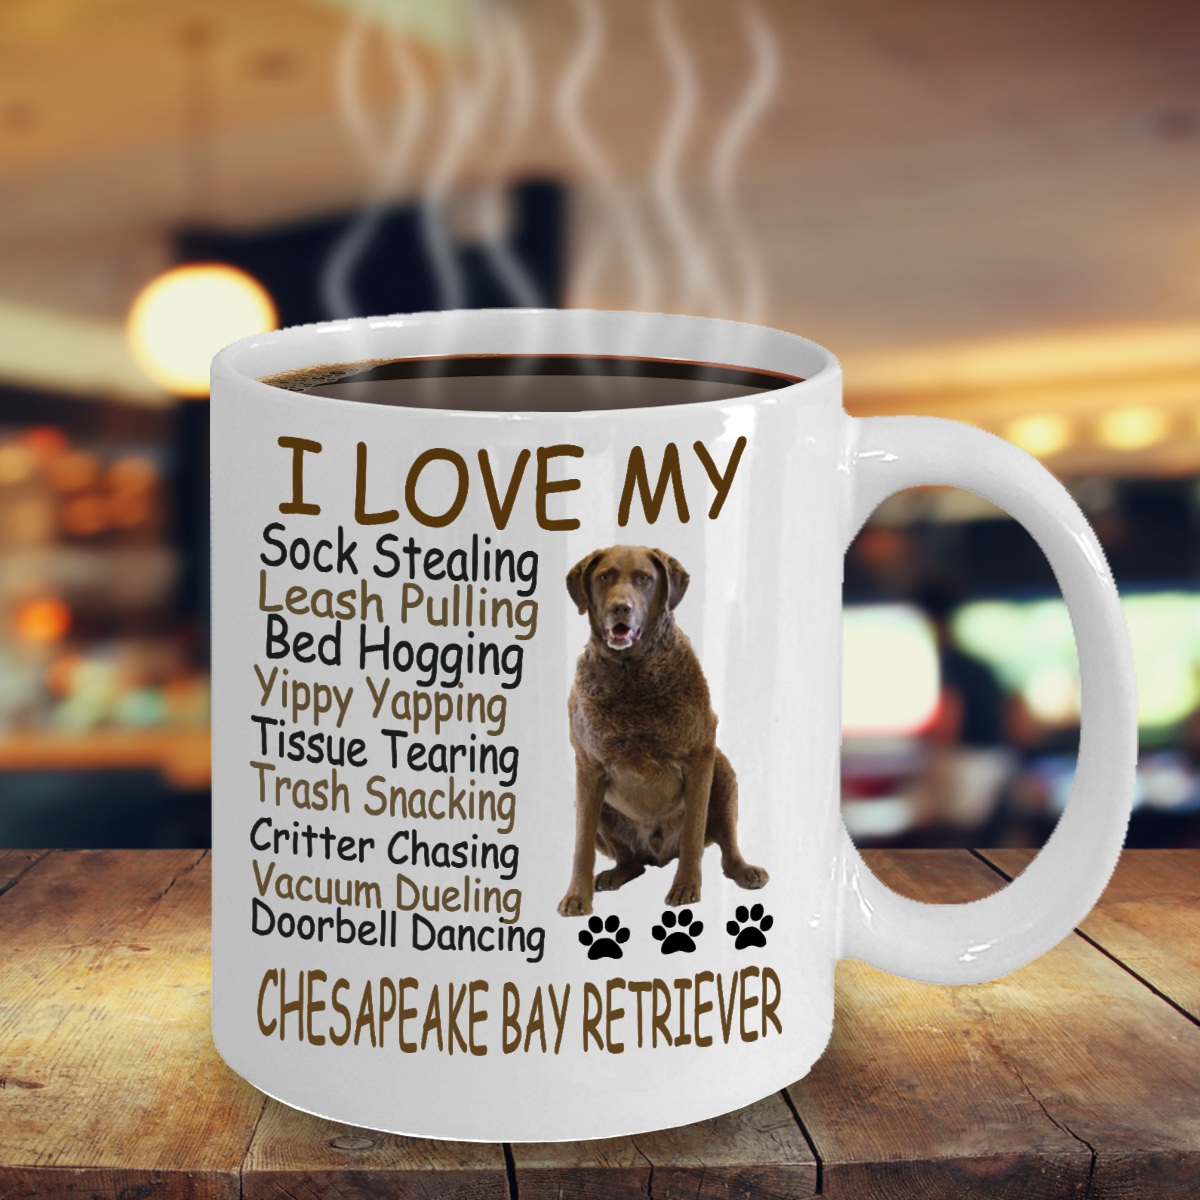 Chesapeake Bay Retriever Dog,chessie,chesapeake,cbr,chesapeake,coffee Mugs,cup